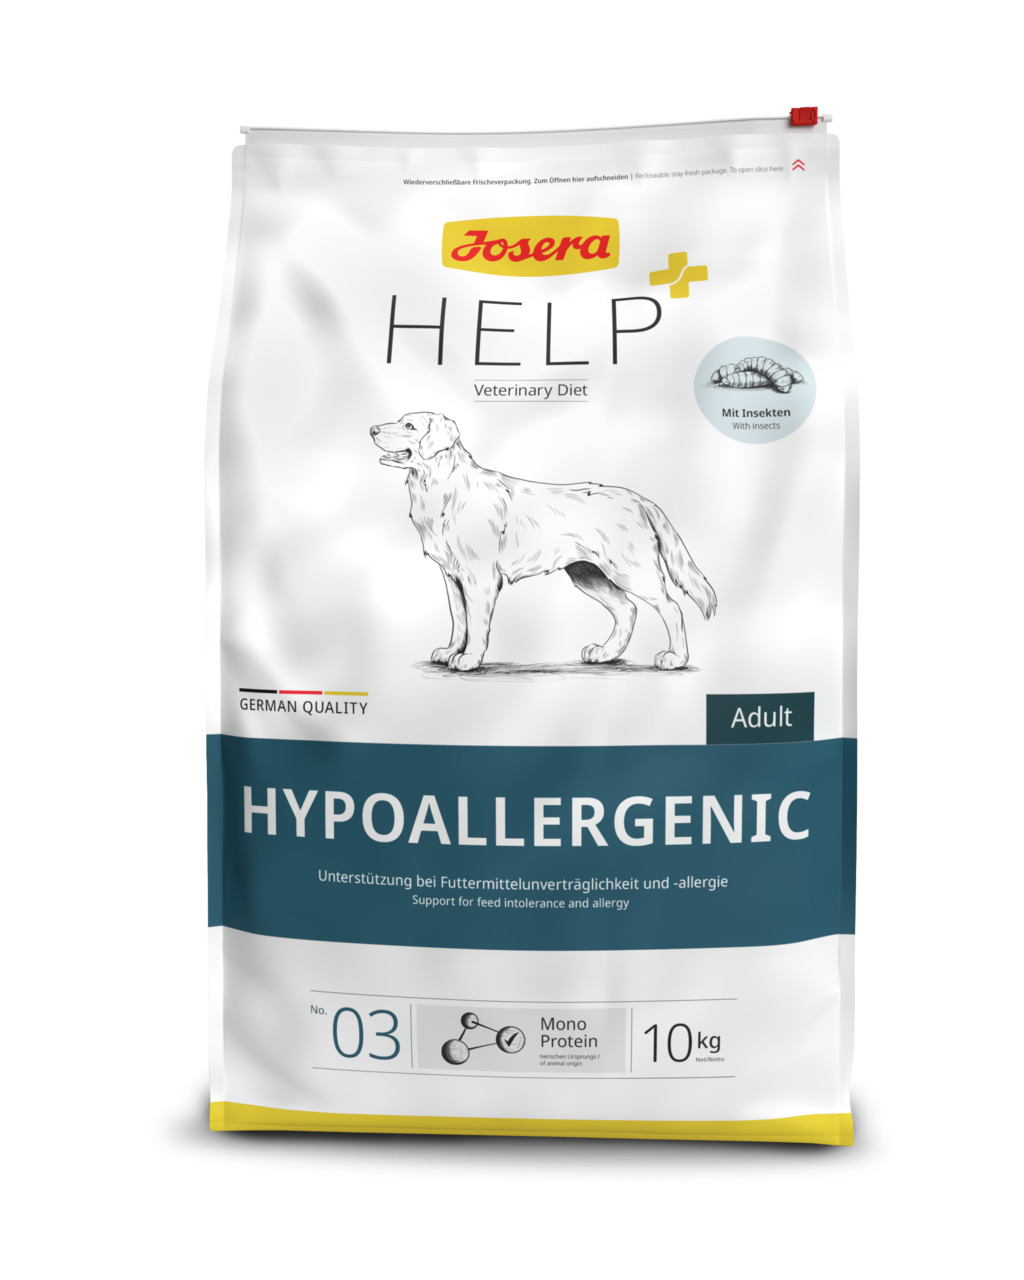 Josera Help Hypoallergenic Hunde Trockenfutter 10 kg